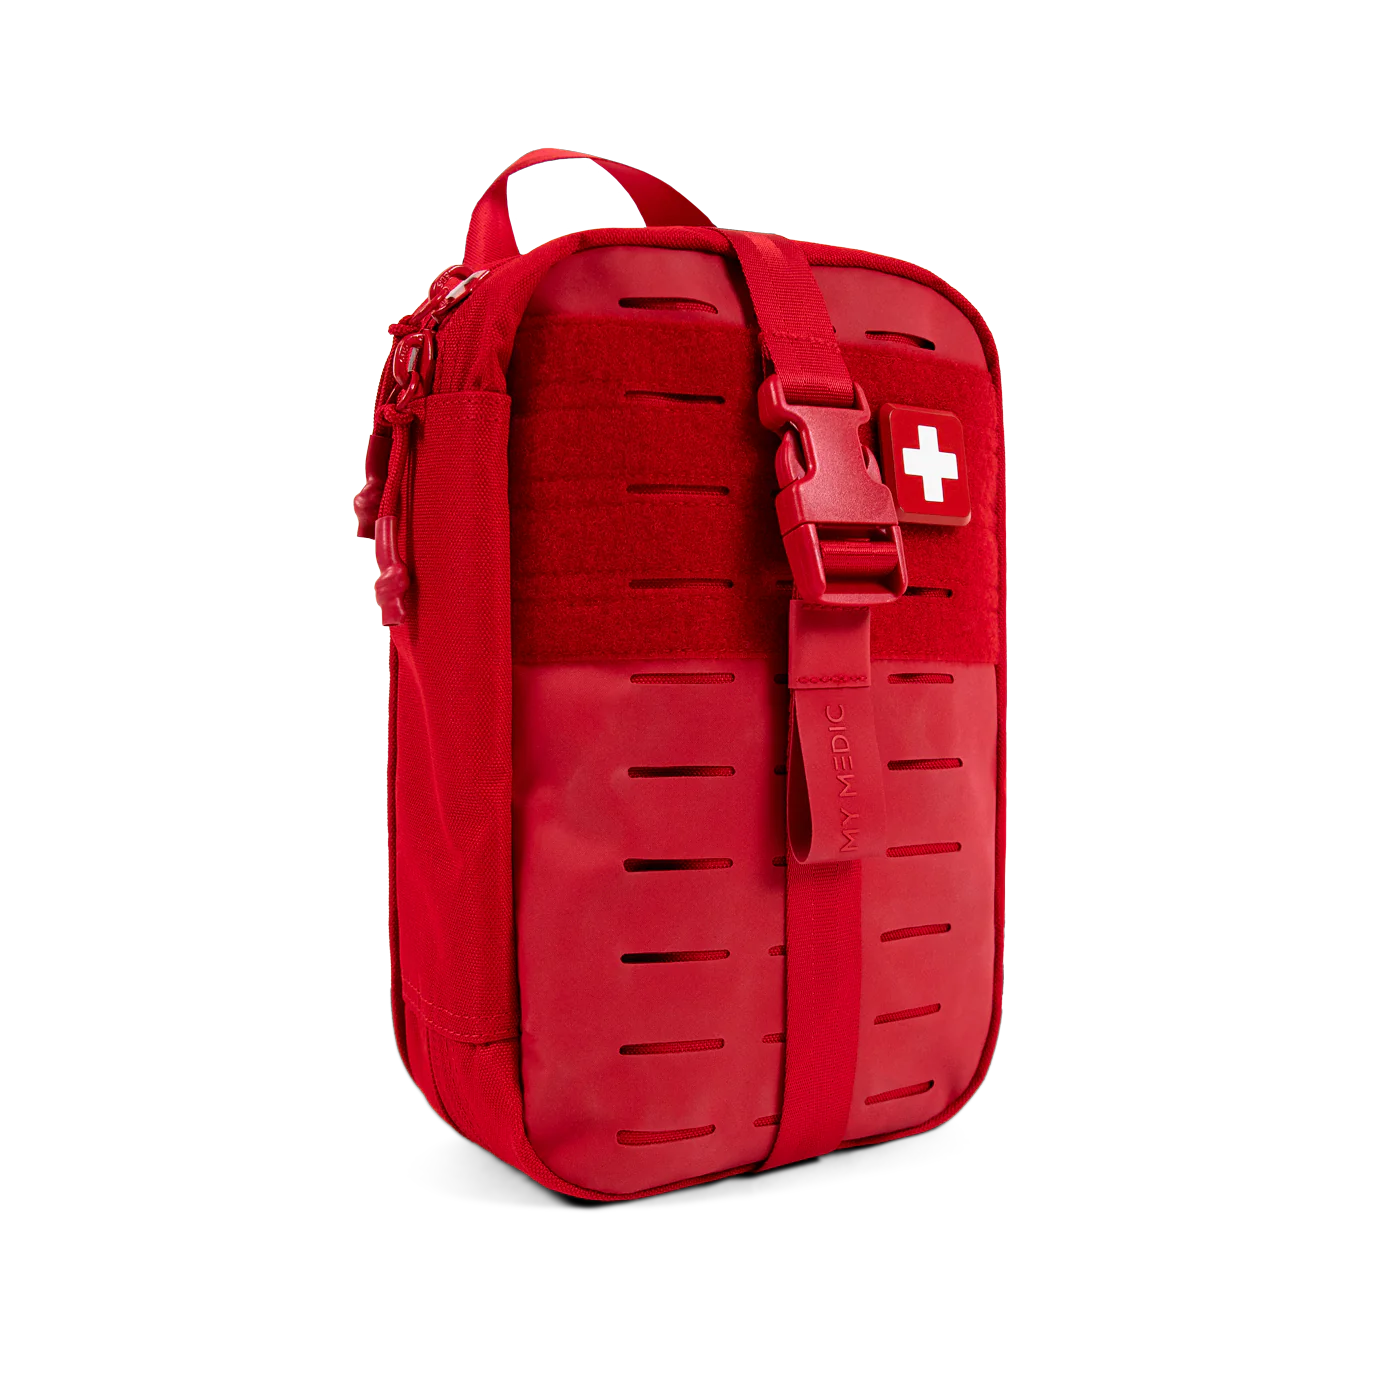 Myfak First Aid Kits Standard